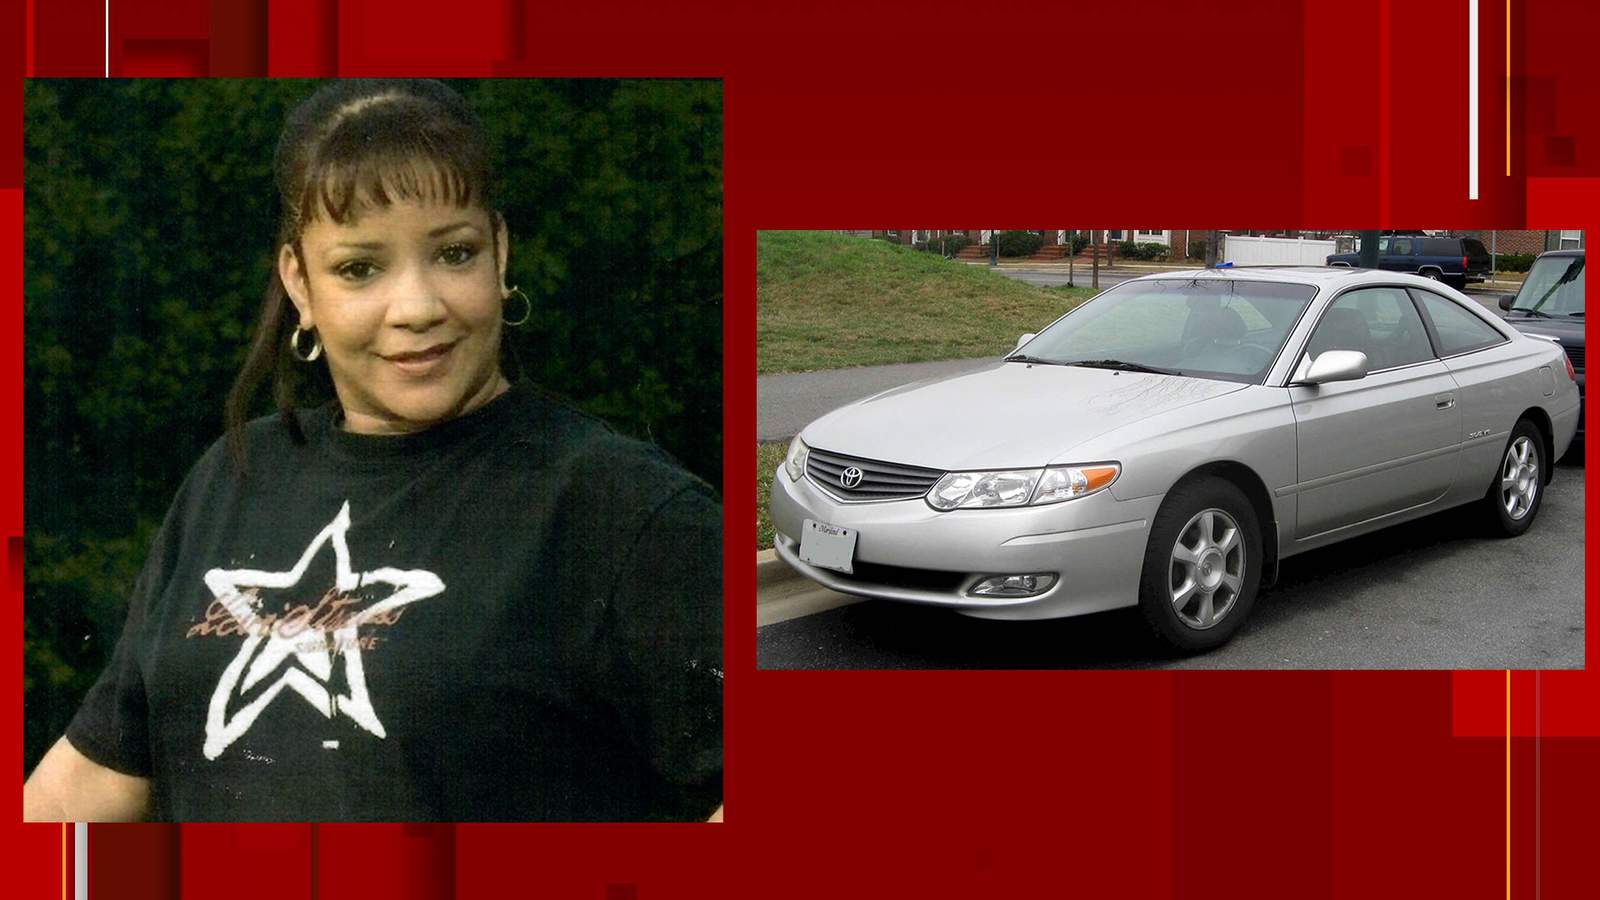 Body found inside car in Ridgeway identified as missing woman